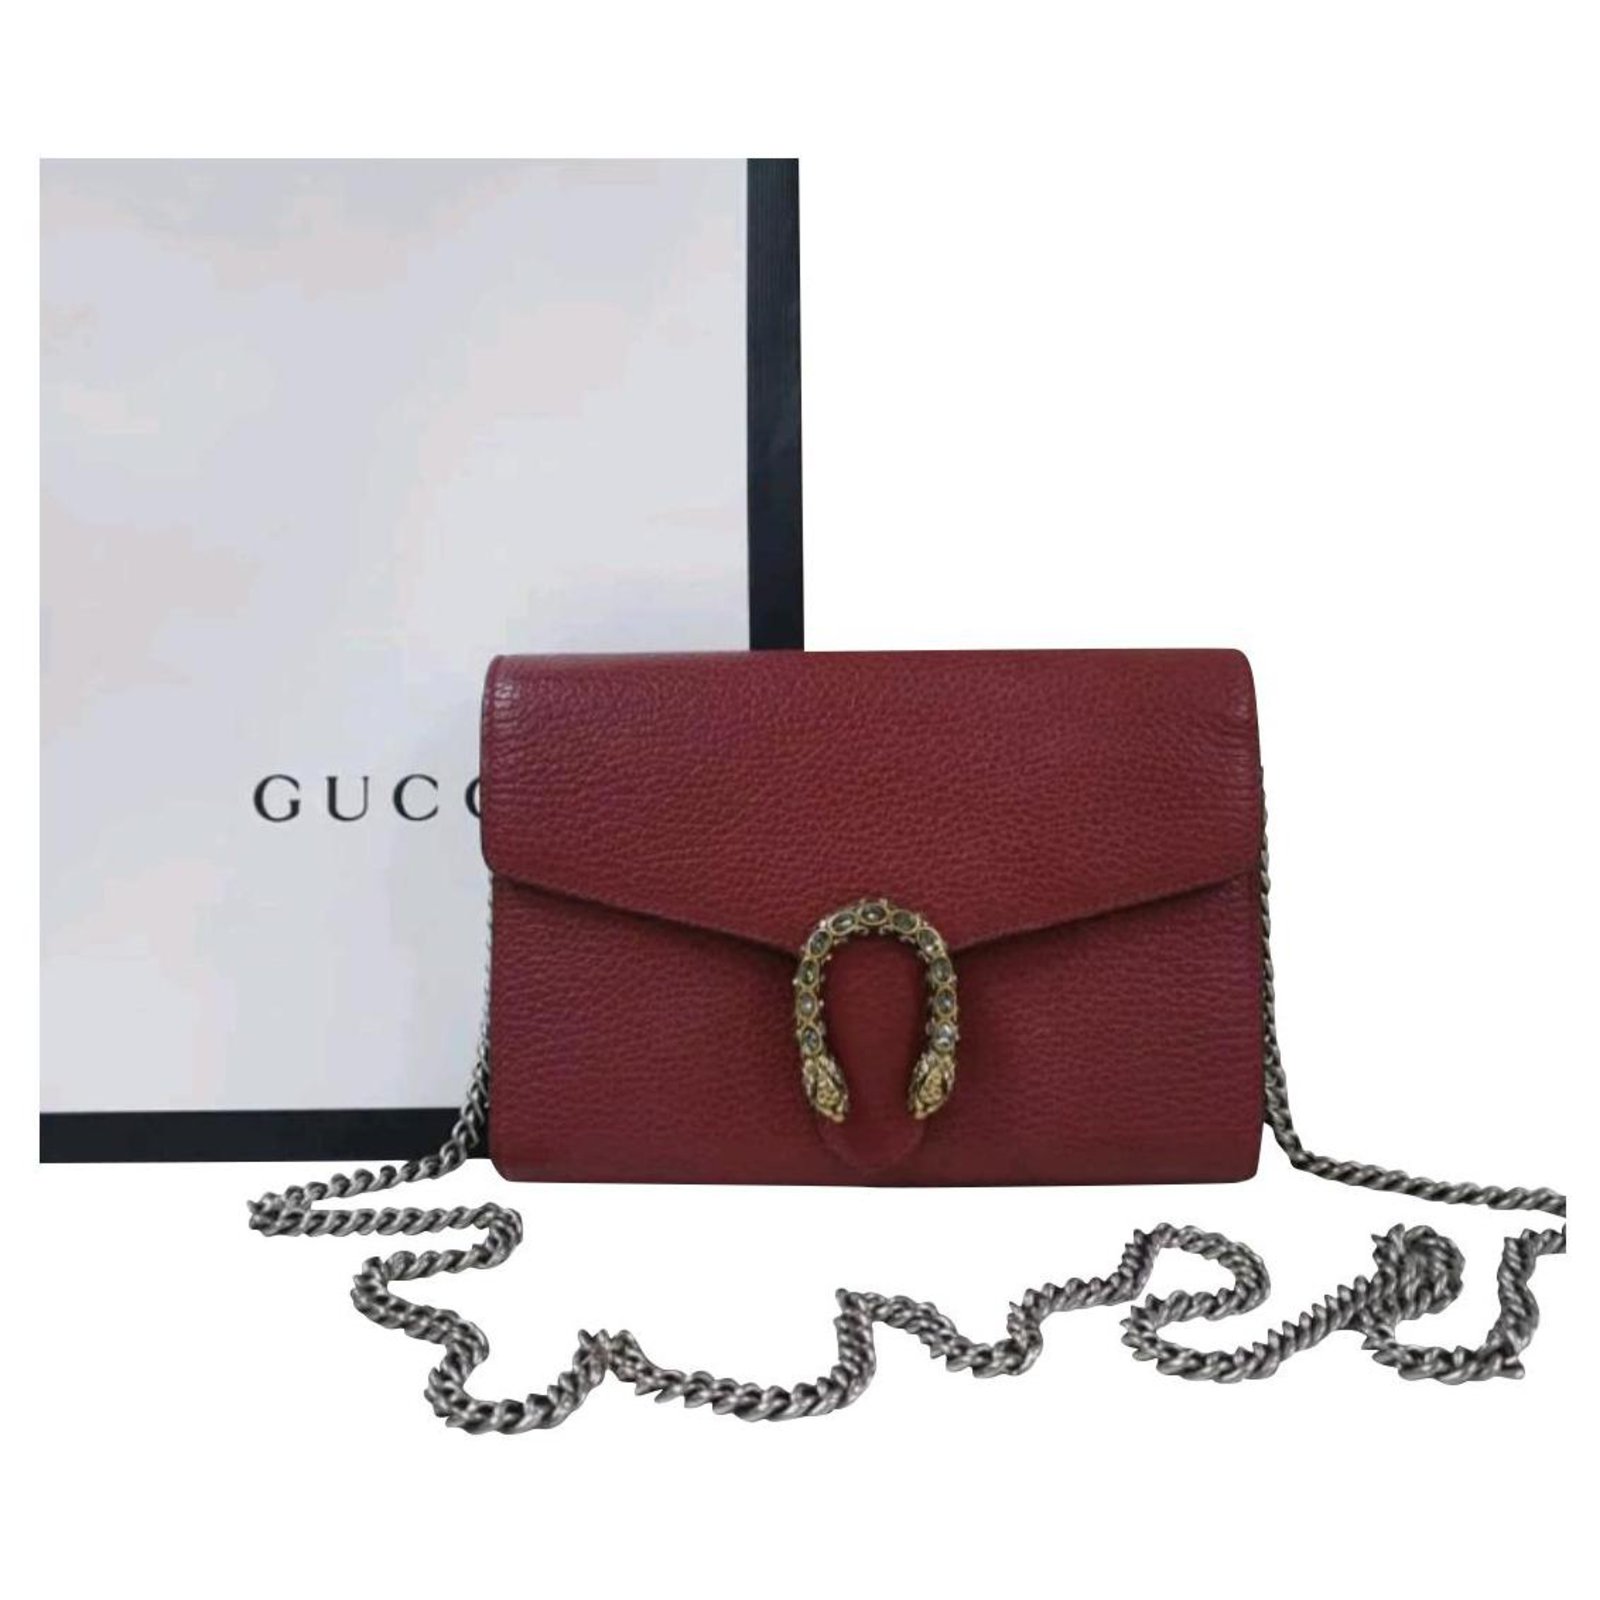 gucci dionysus leather mini chain bag